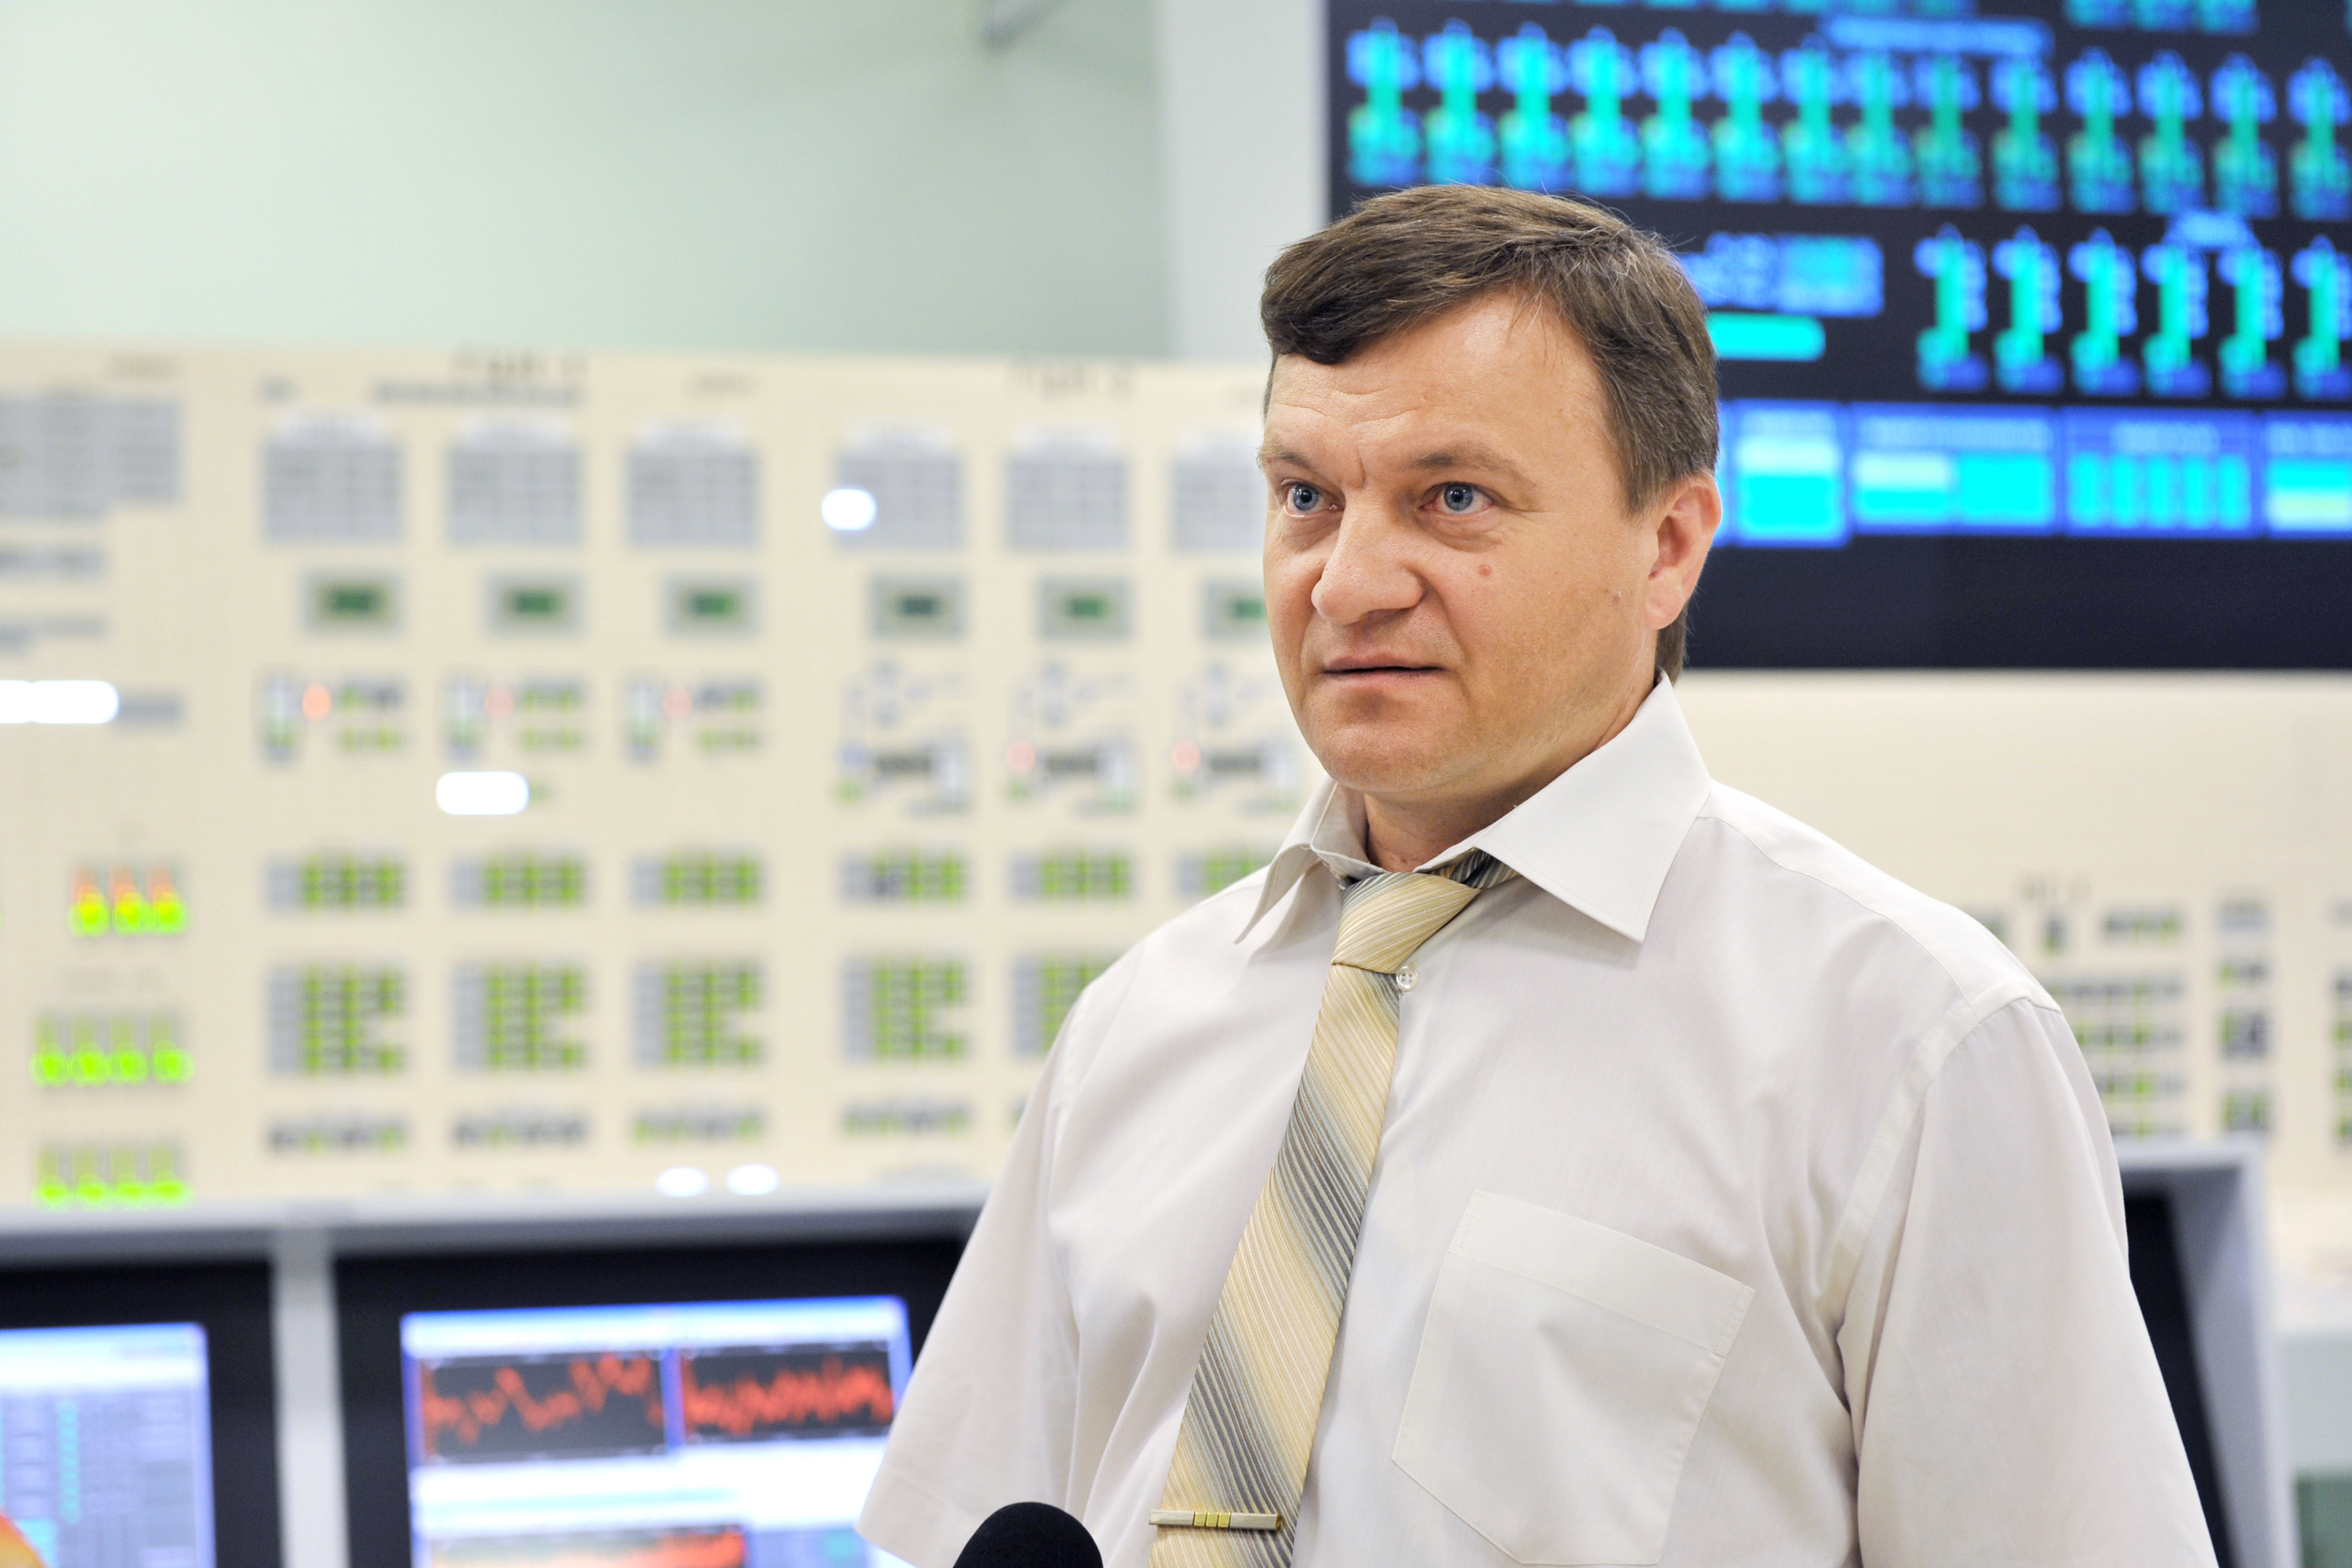 Белоярская АЭС получила престижную отраслевую награду за переход на МОКС-топливо